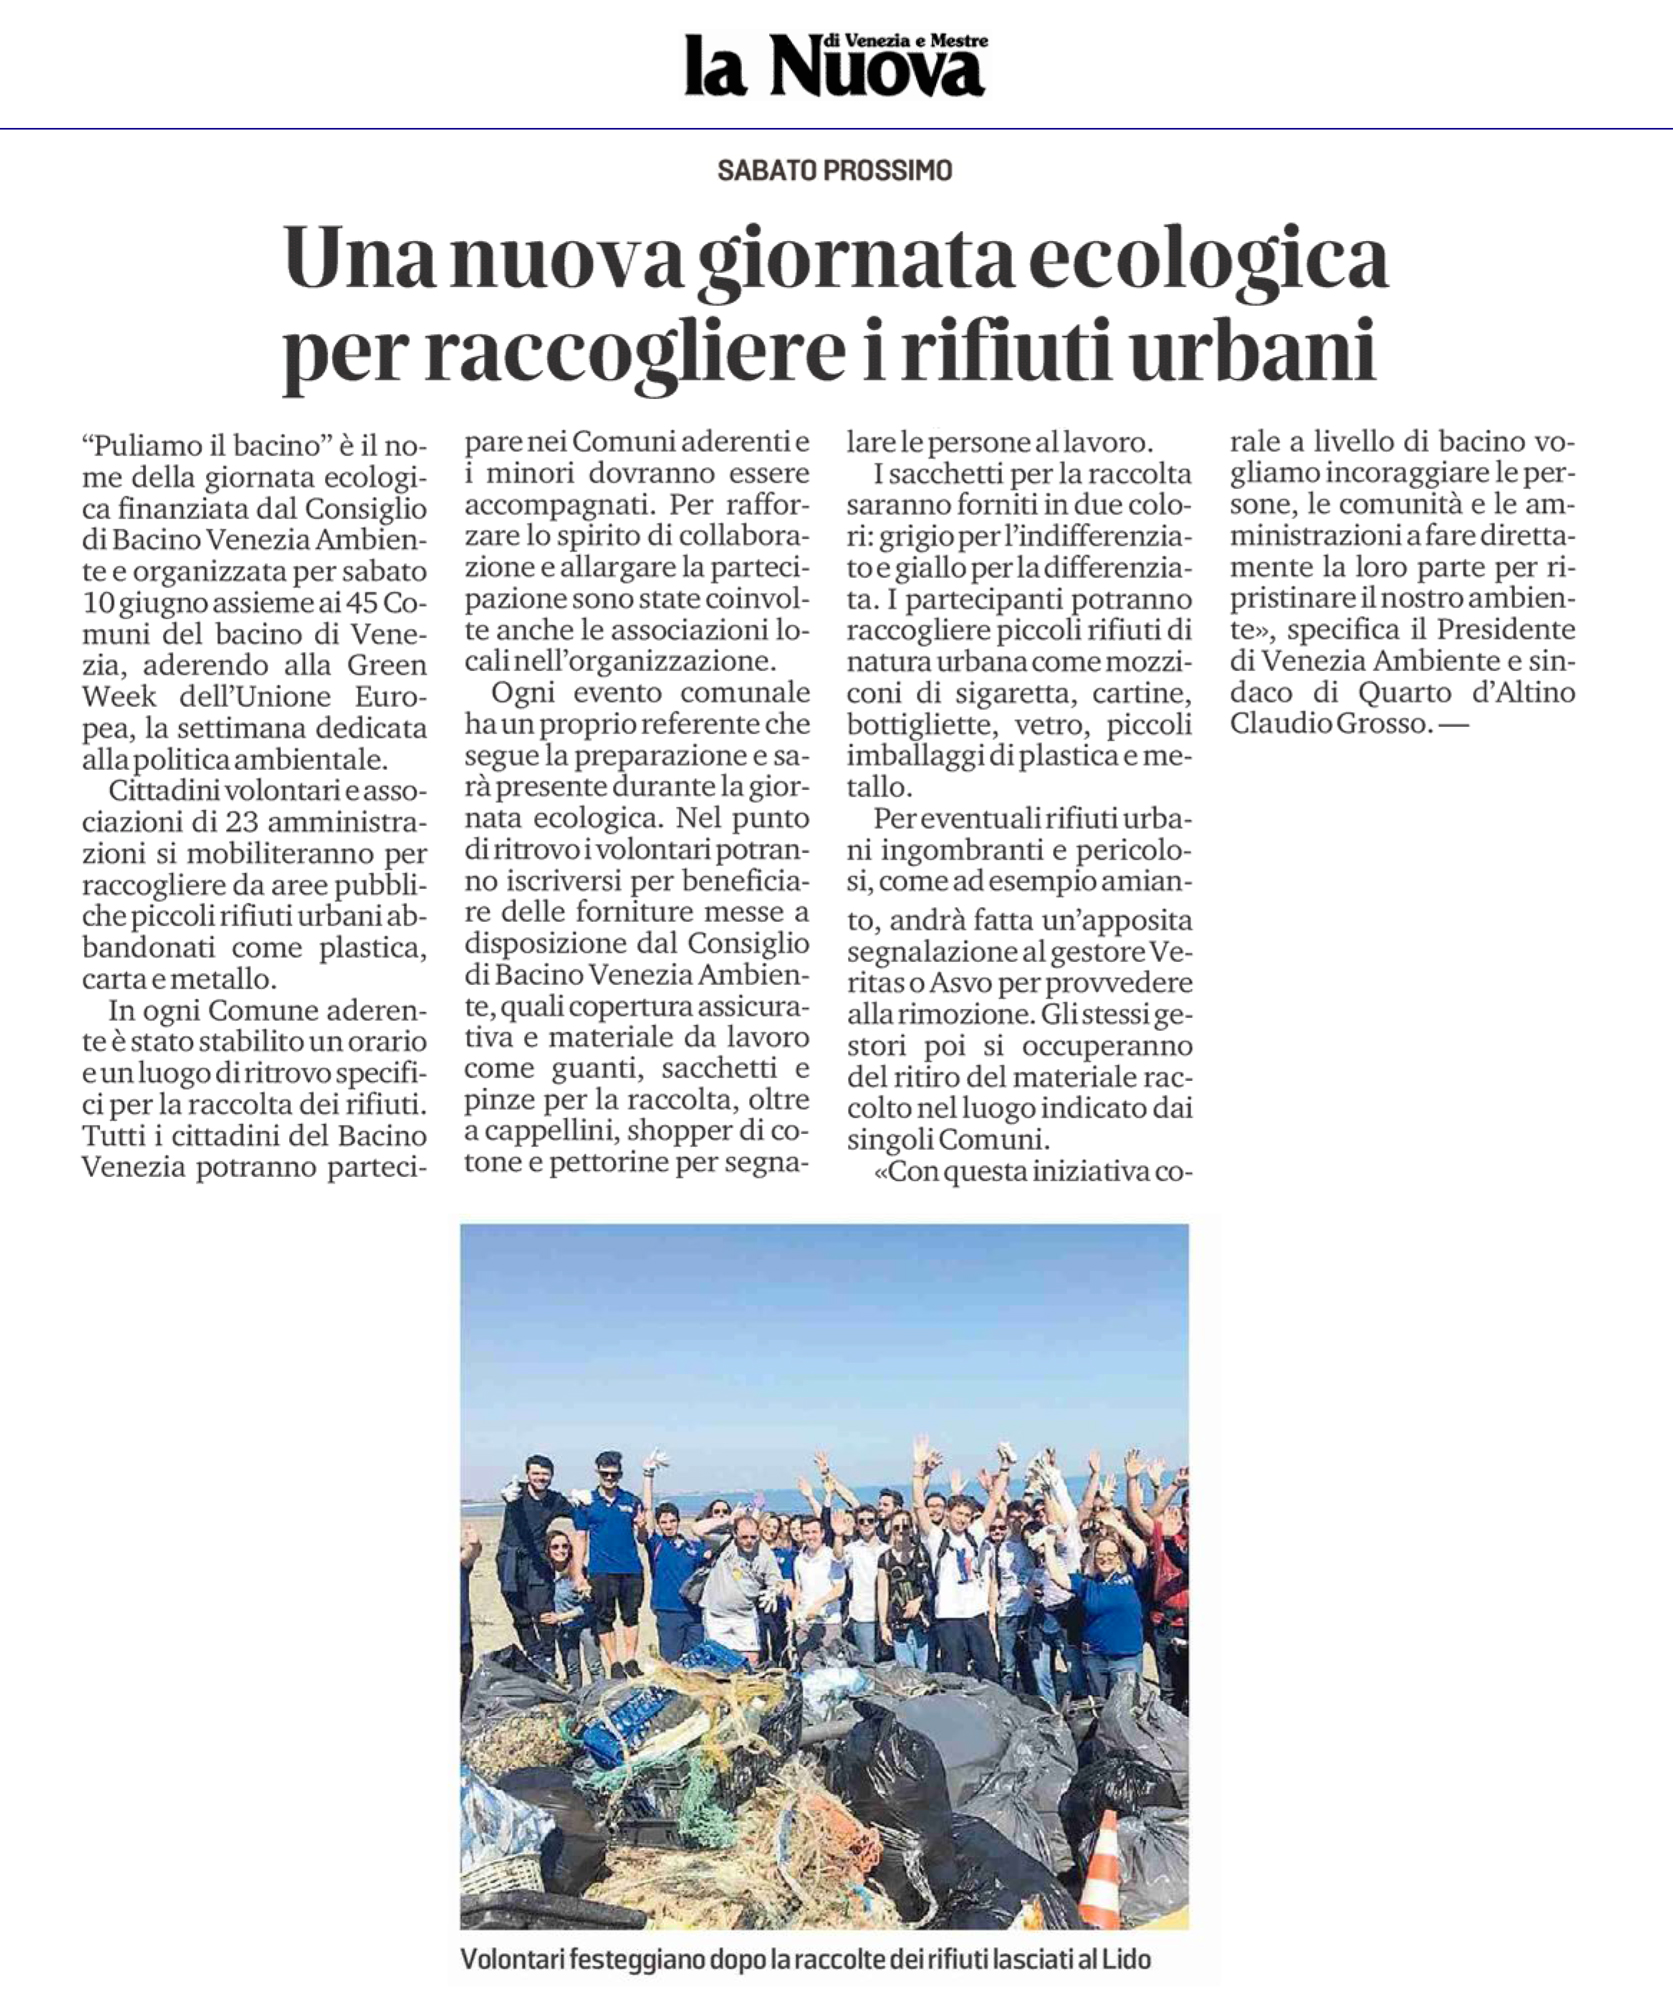 nuova-giornata-ecologica-per-raccogliere-rifiuti-urbani-nel-bacino-venezia